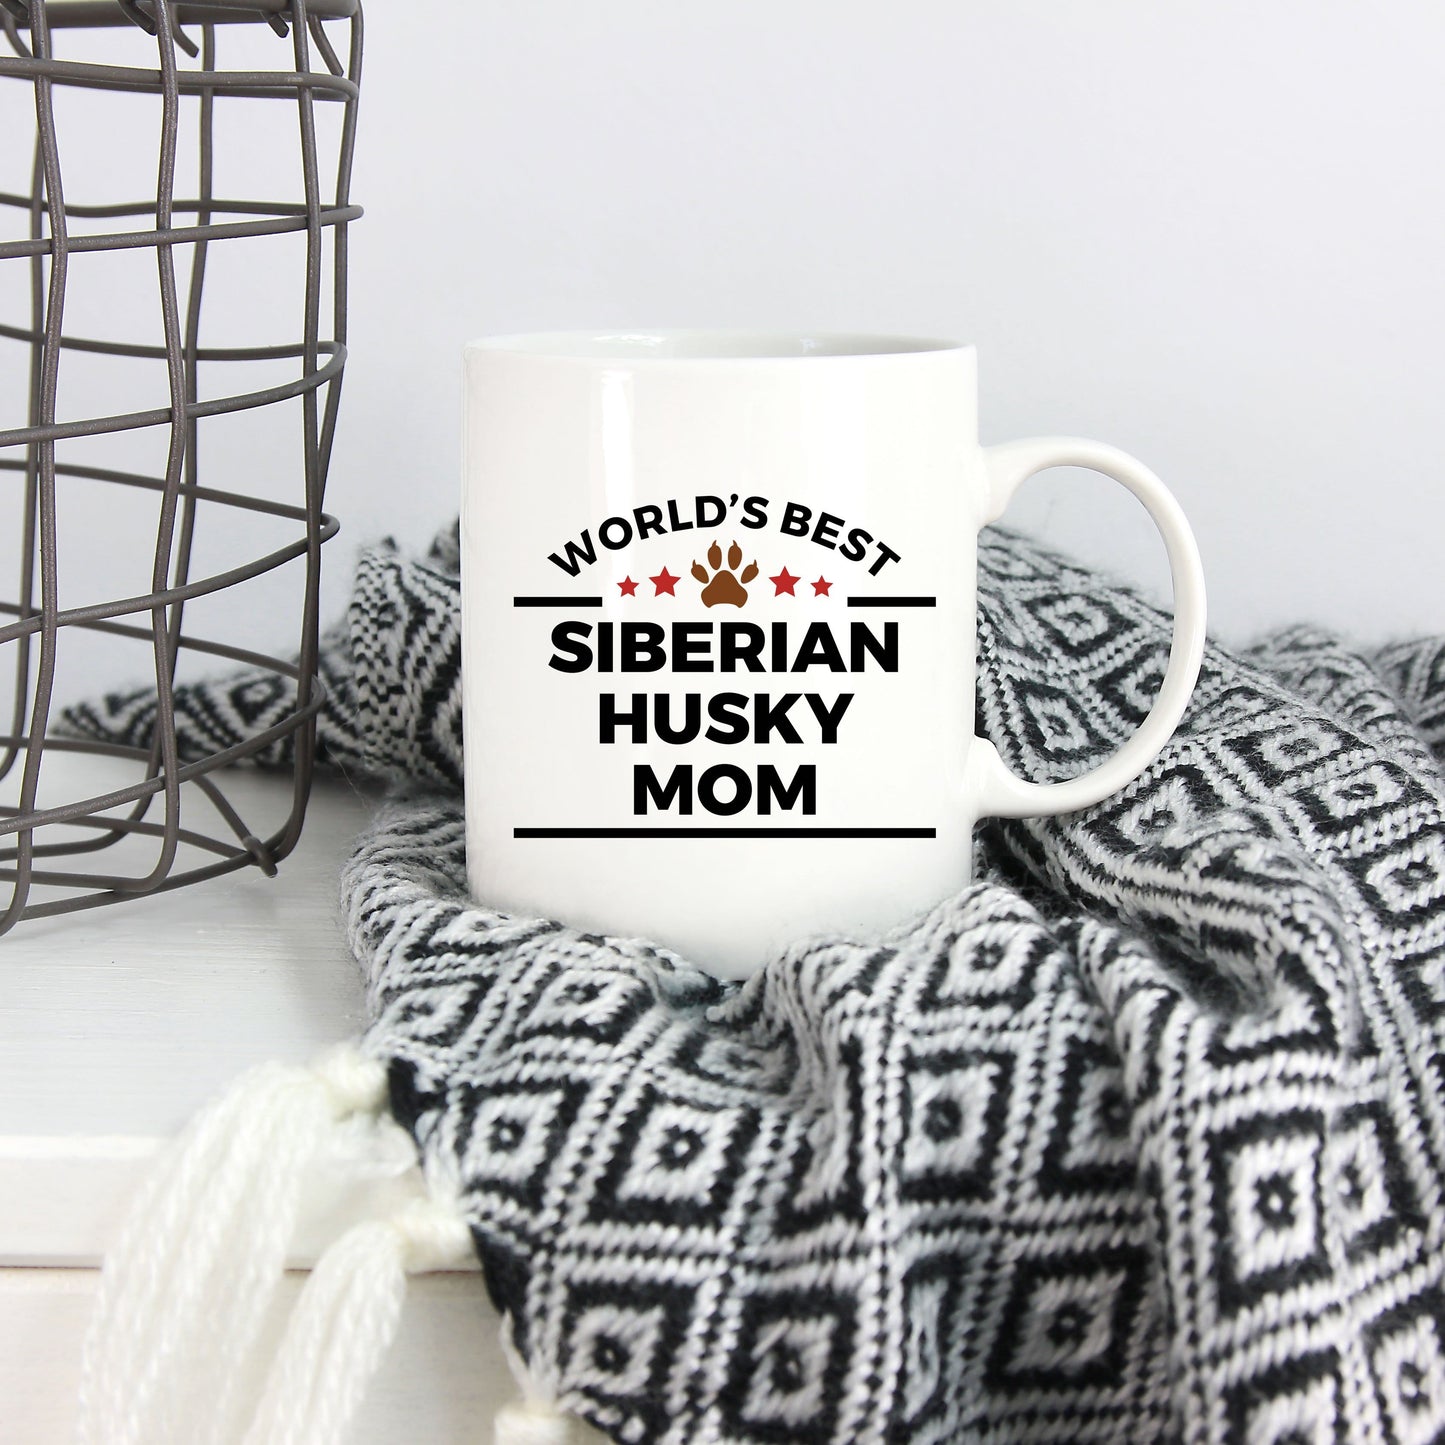 World's Best Siberian Husky Mom Ceramic Mug